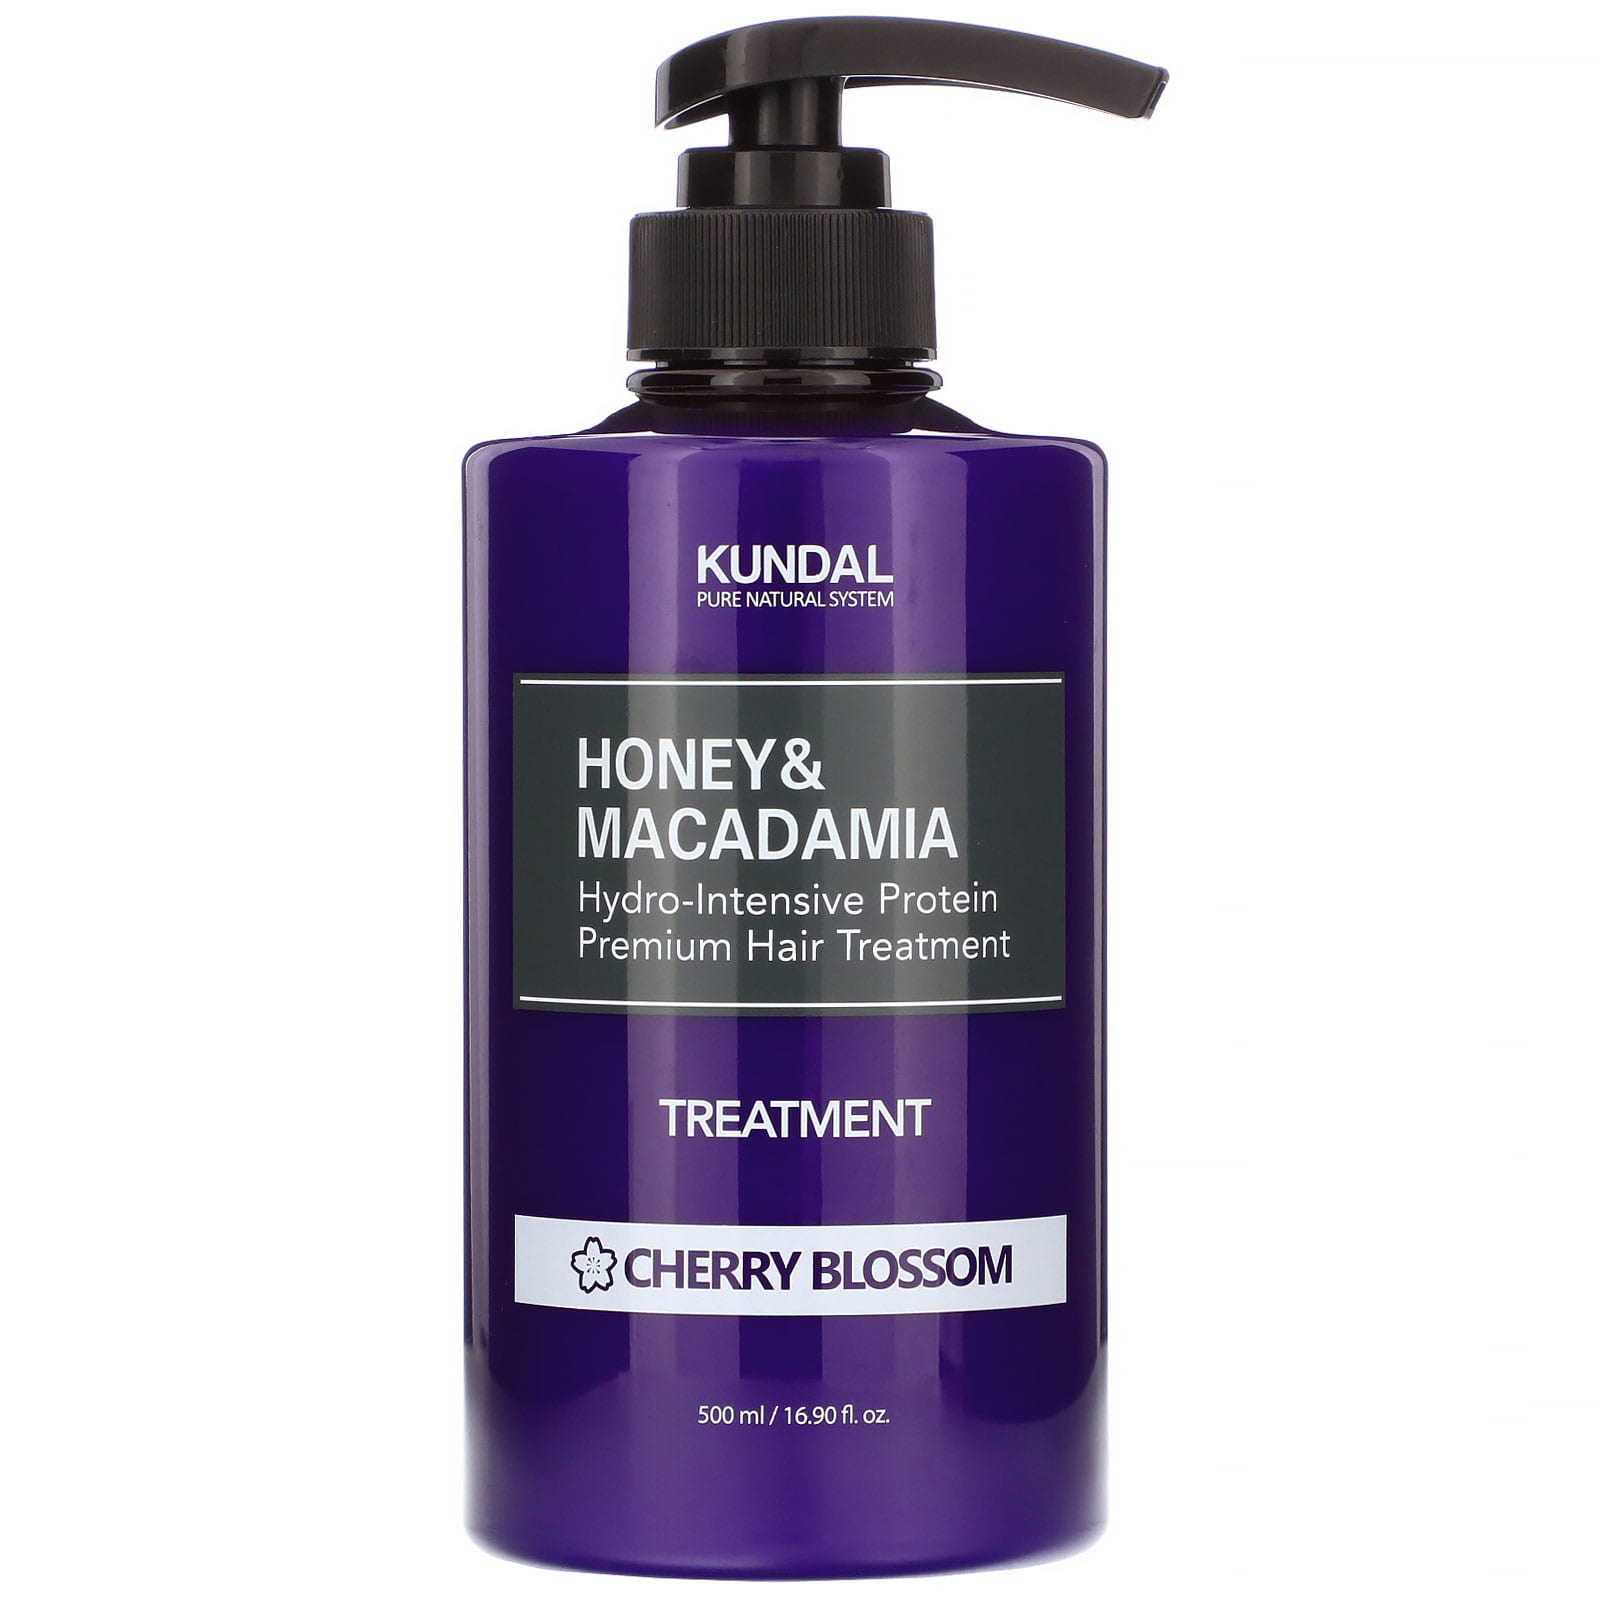 Kundal Honey & Macadamia Cherry Blossom Hair Treatment